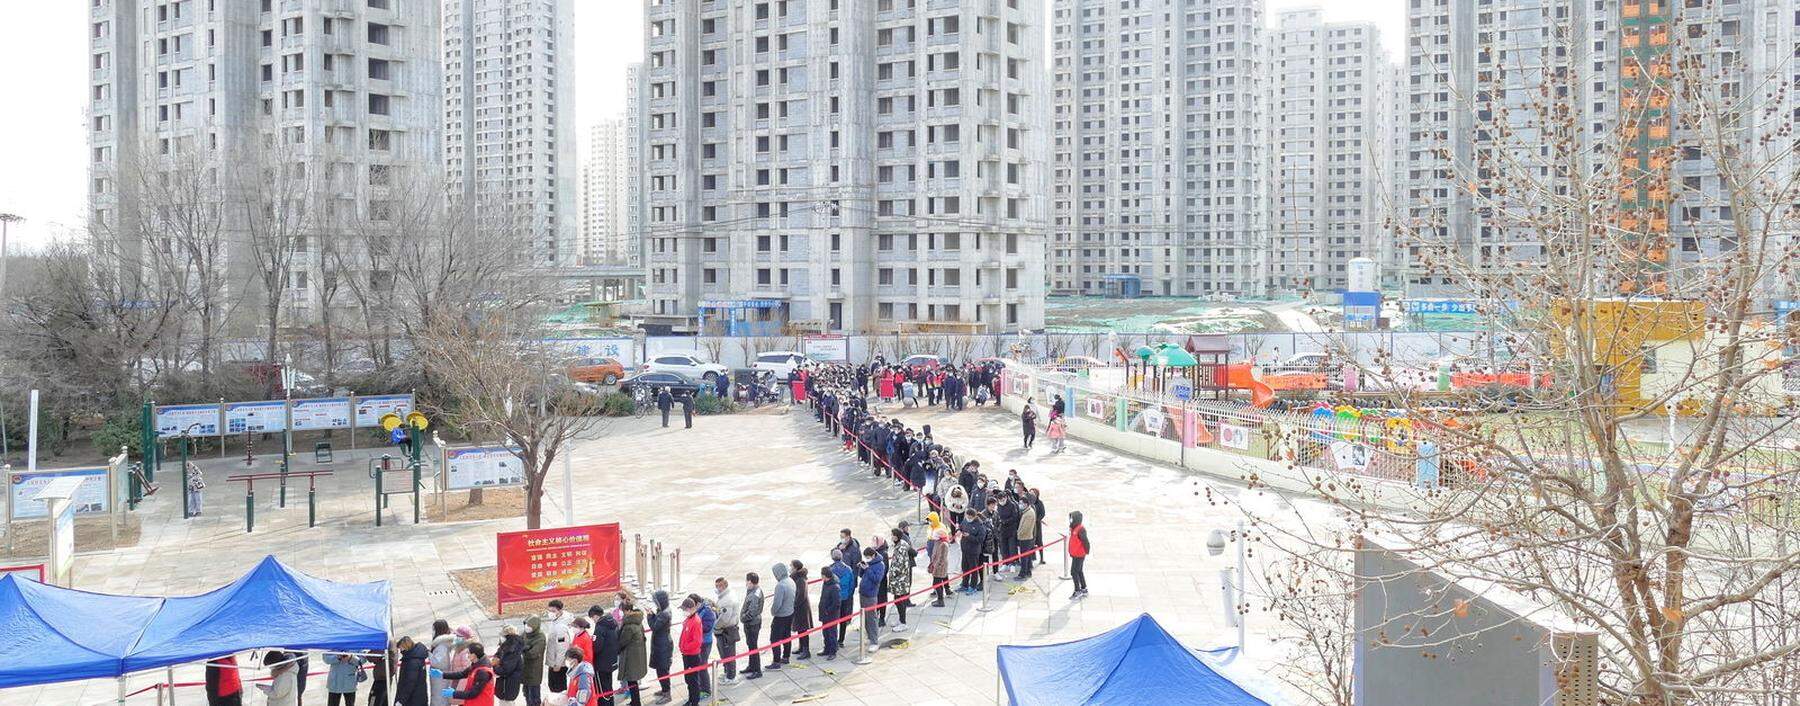 Anstellen zum Coronatest in Tianjin. In der chinesischen Stadt ist die Omikron-Variante aufgetaucht.